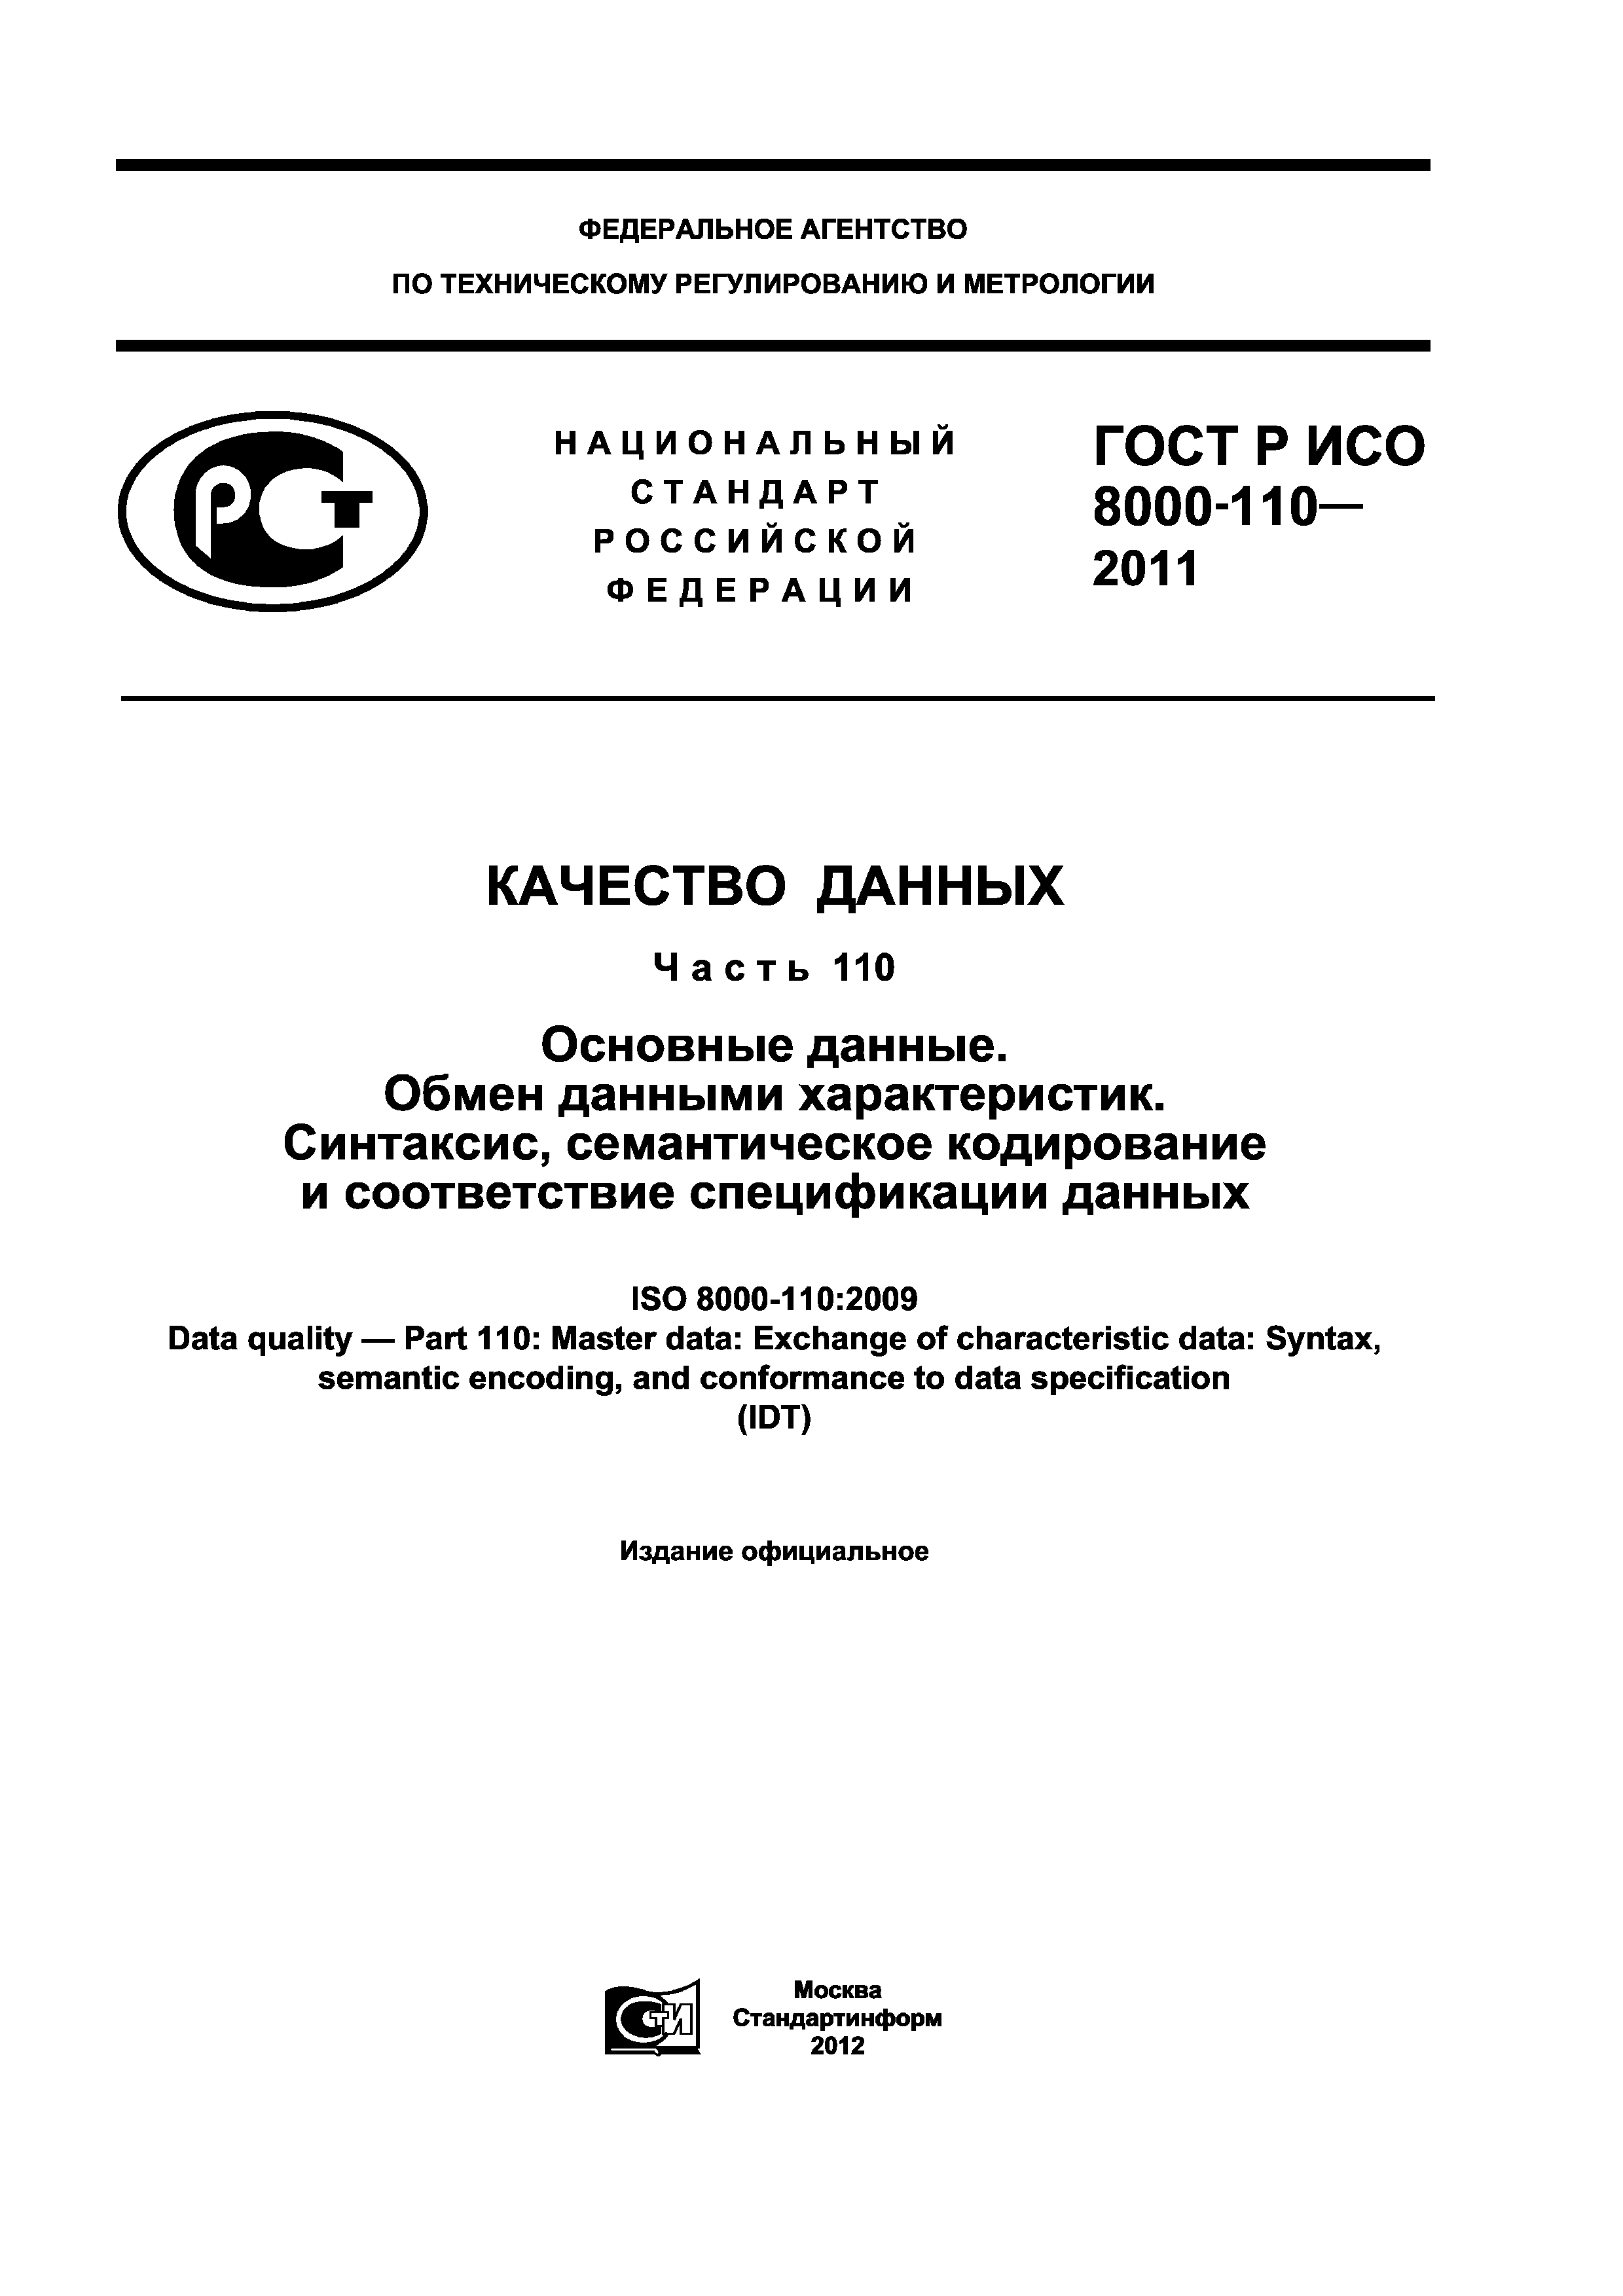 ГОСТ Р ИСО 8000-110-2011